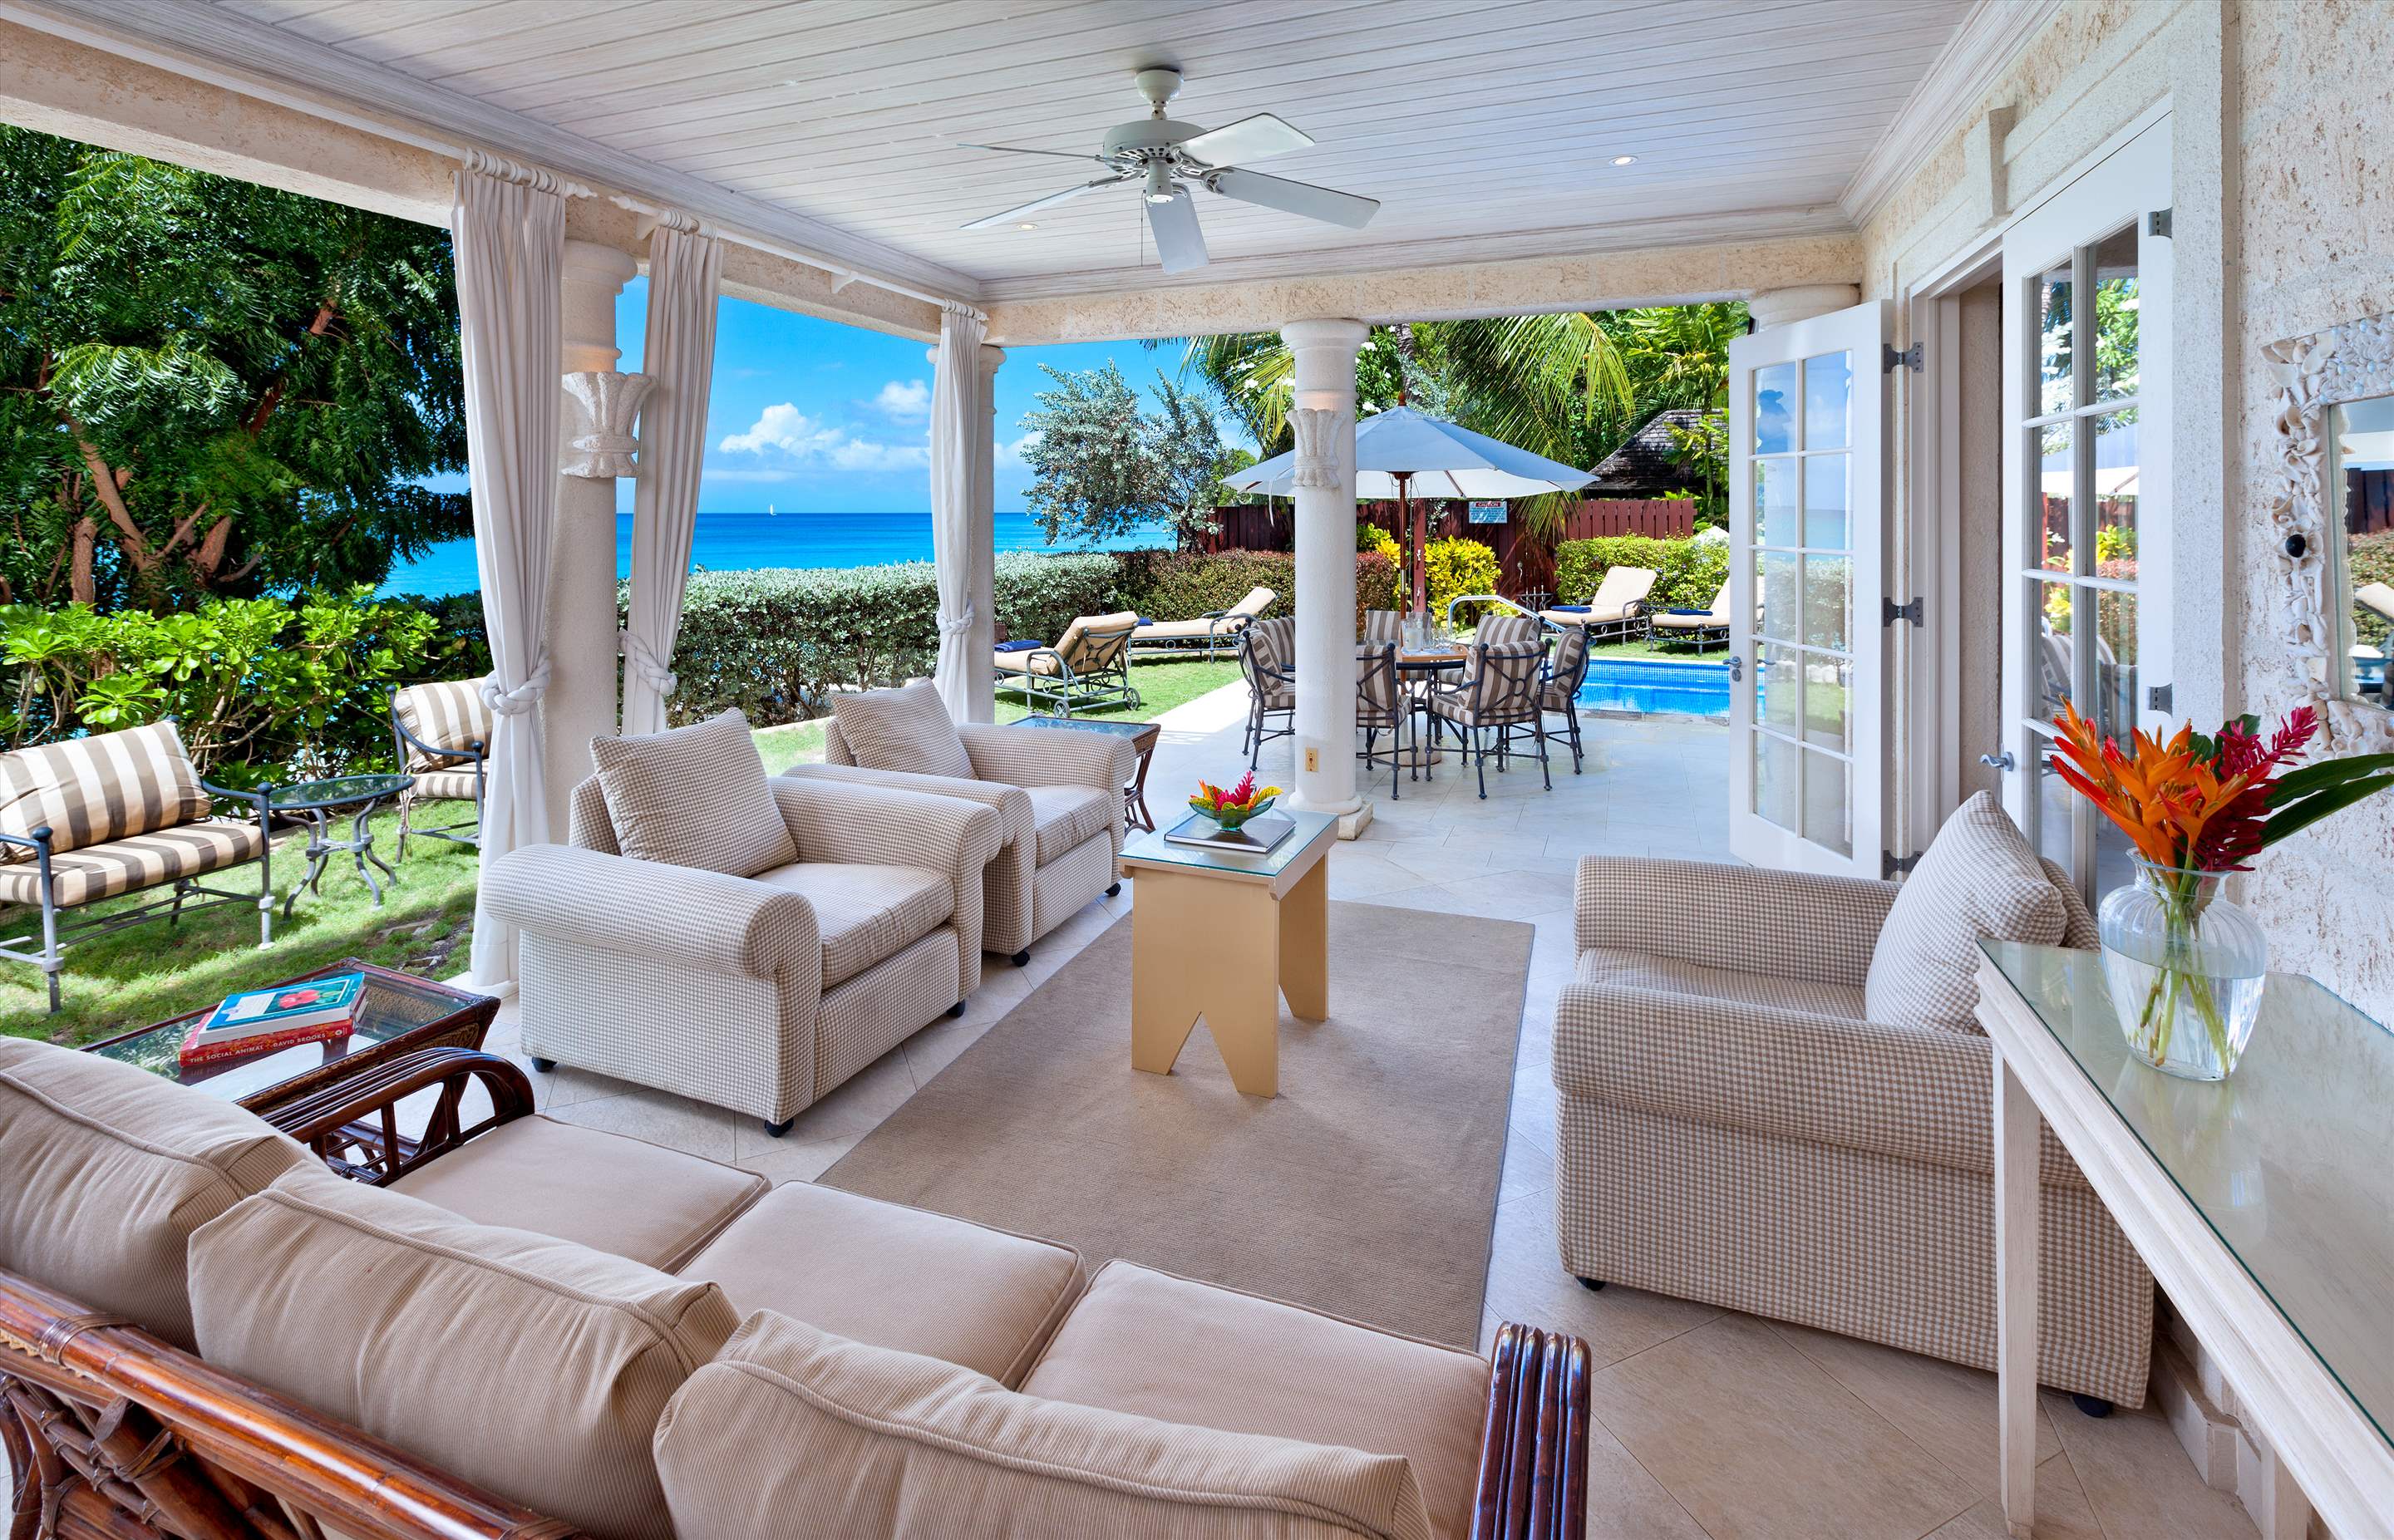 Westhaven, 4 bedroom villa in St. James & West Coast, Barbados Photo #3